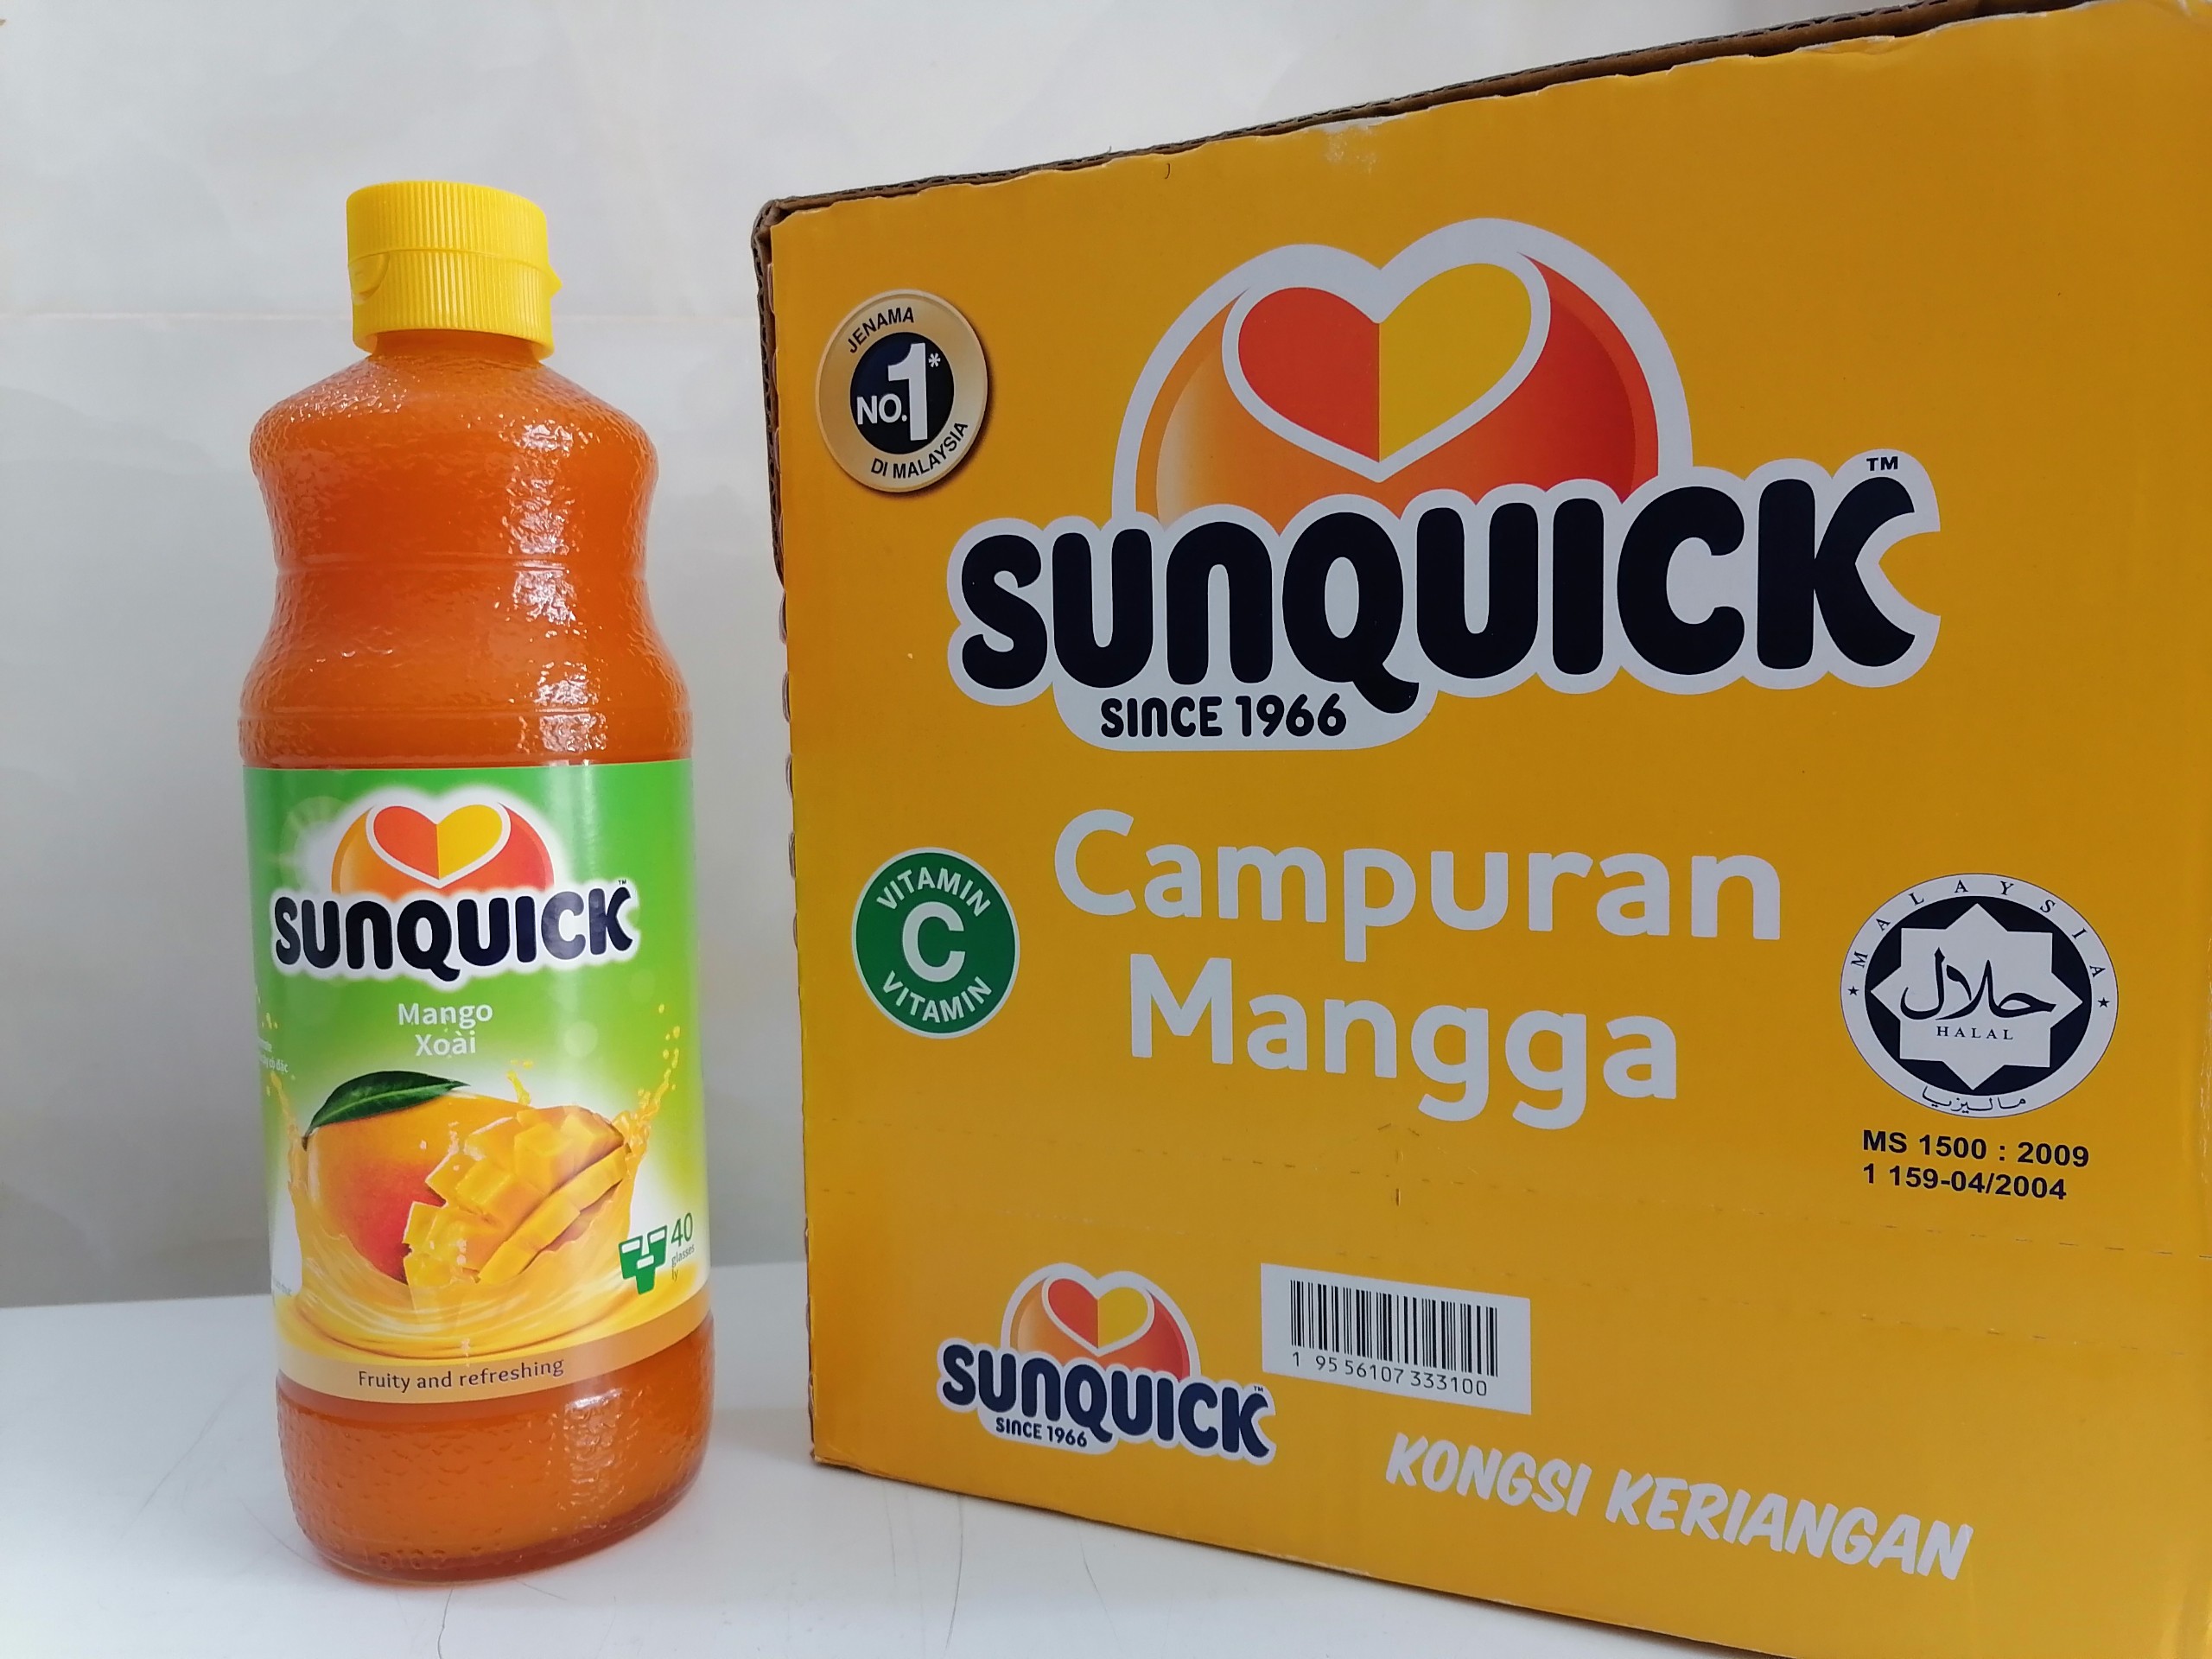 Chai 840ml XOÀI NƯỚC ÉP TRÁI CÂY CÔ ĐẶC Malaysia SUNQUICK Mango Fruity and